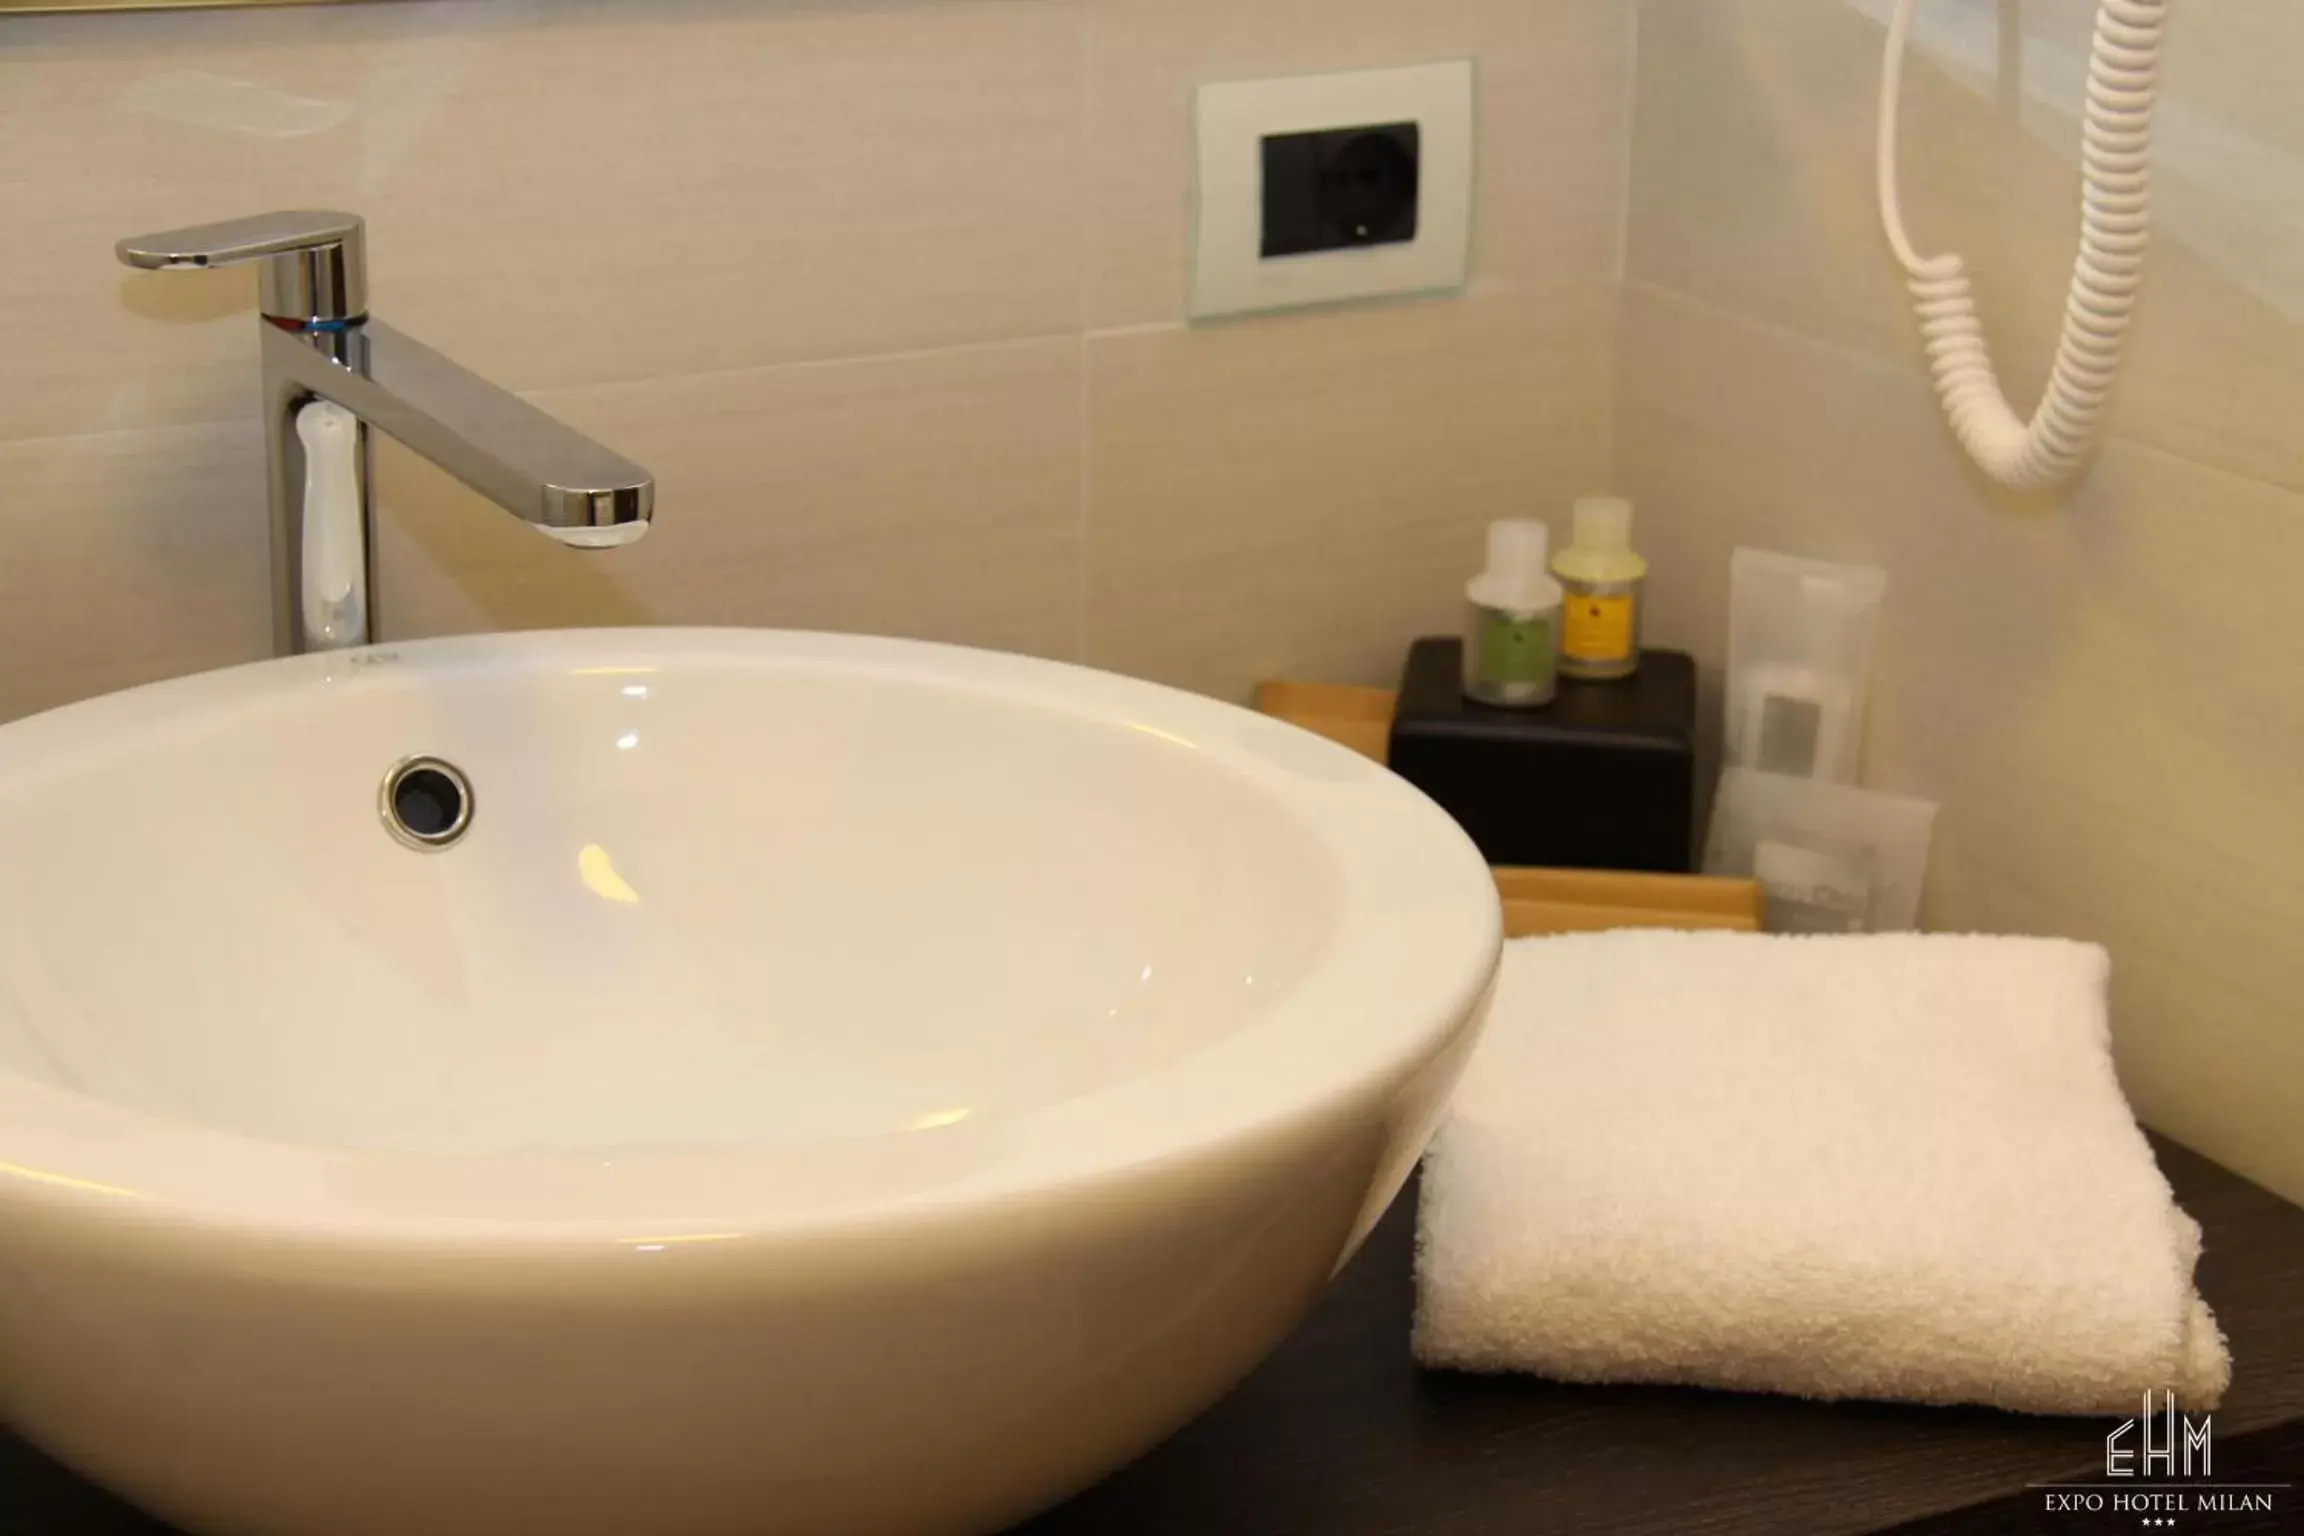 Bathroom in Expo Hotel Milan